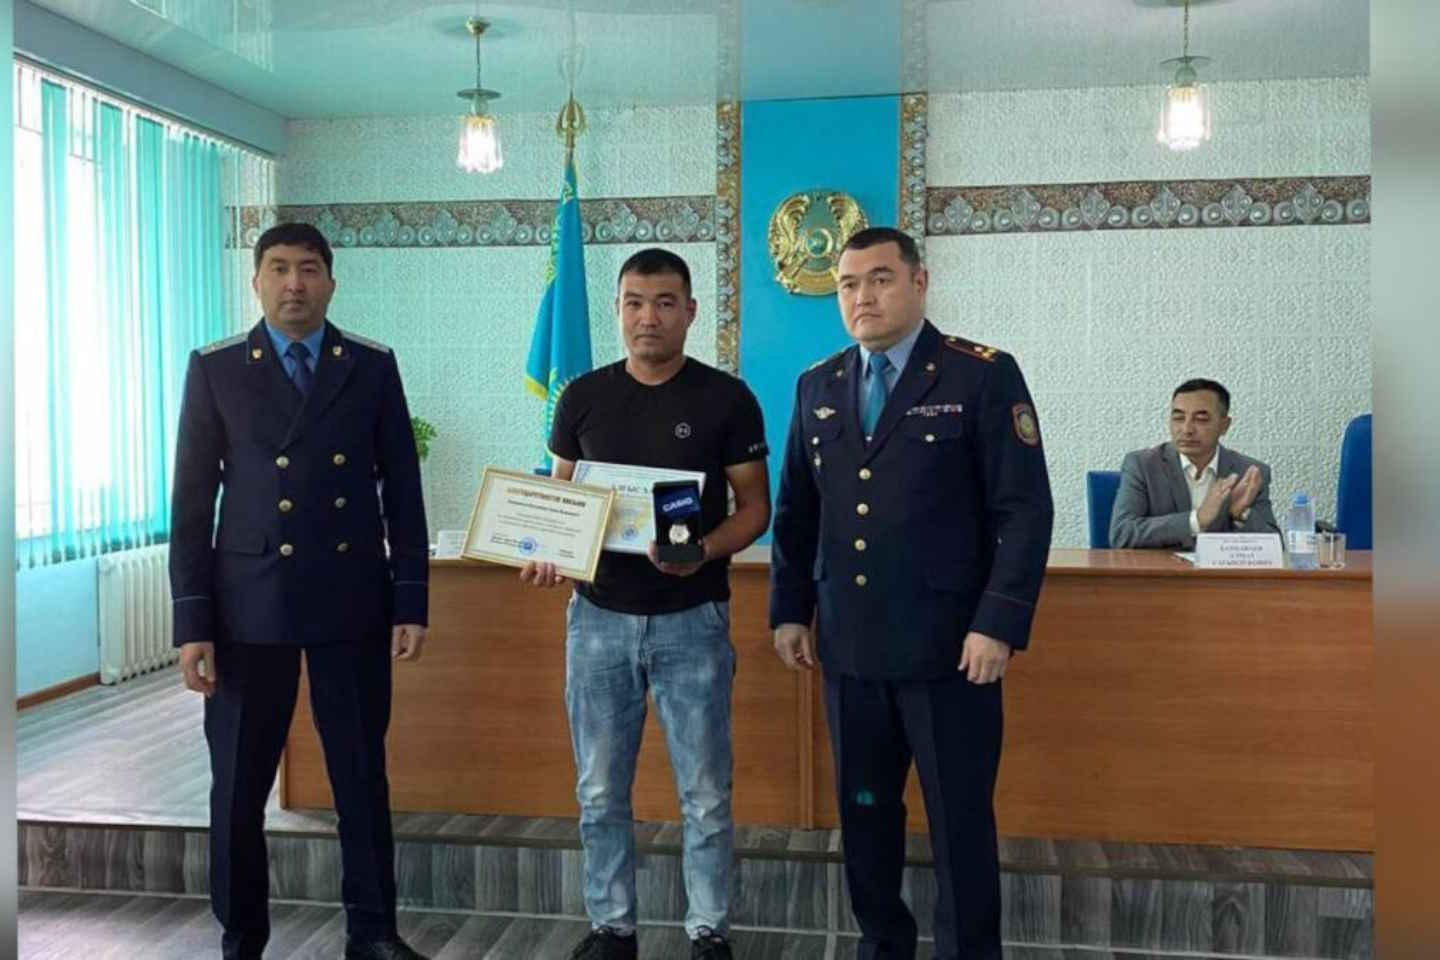 Новости Казахстана / Общество в Казахстане / Полиция Лисаковска наградила бдительного таксиста